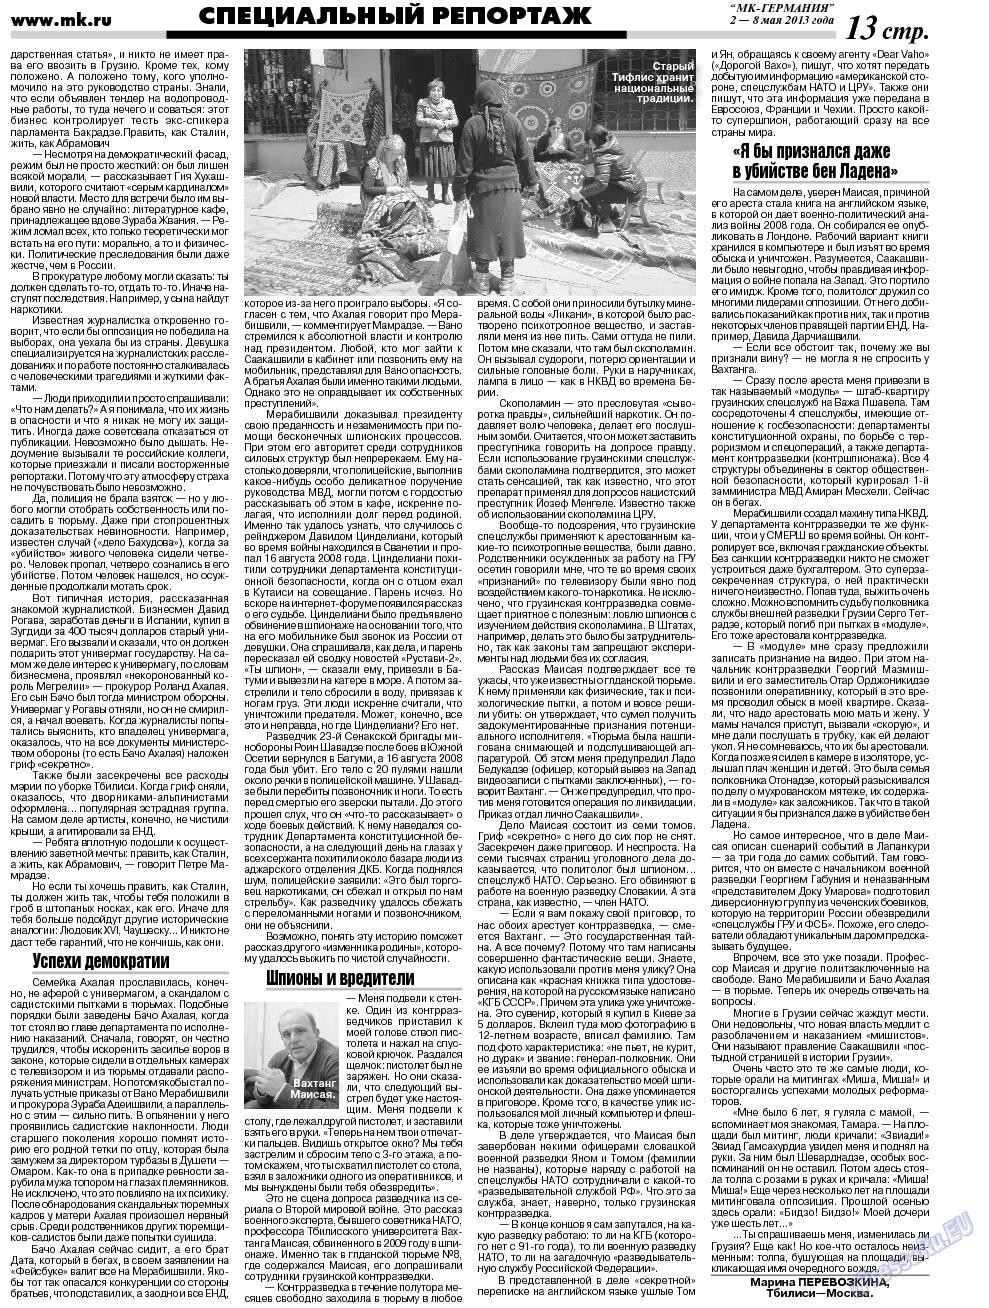 МК-Германия (газета). 2013 год, номер 24, стр. 13